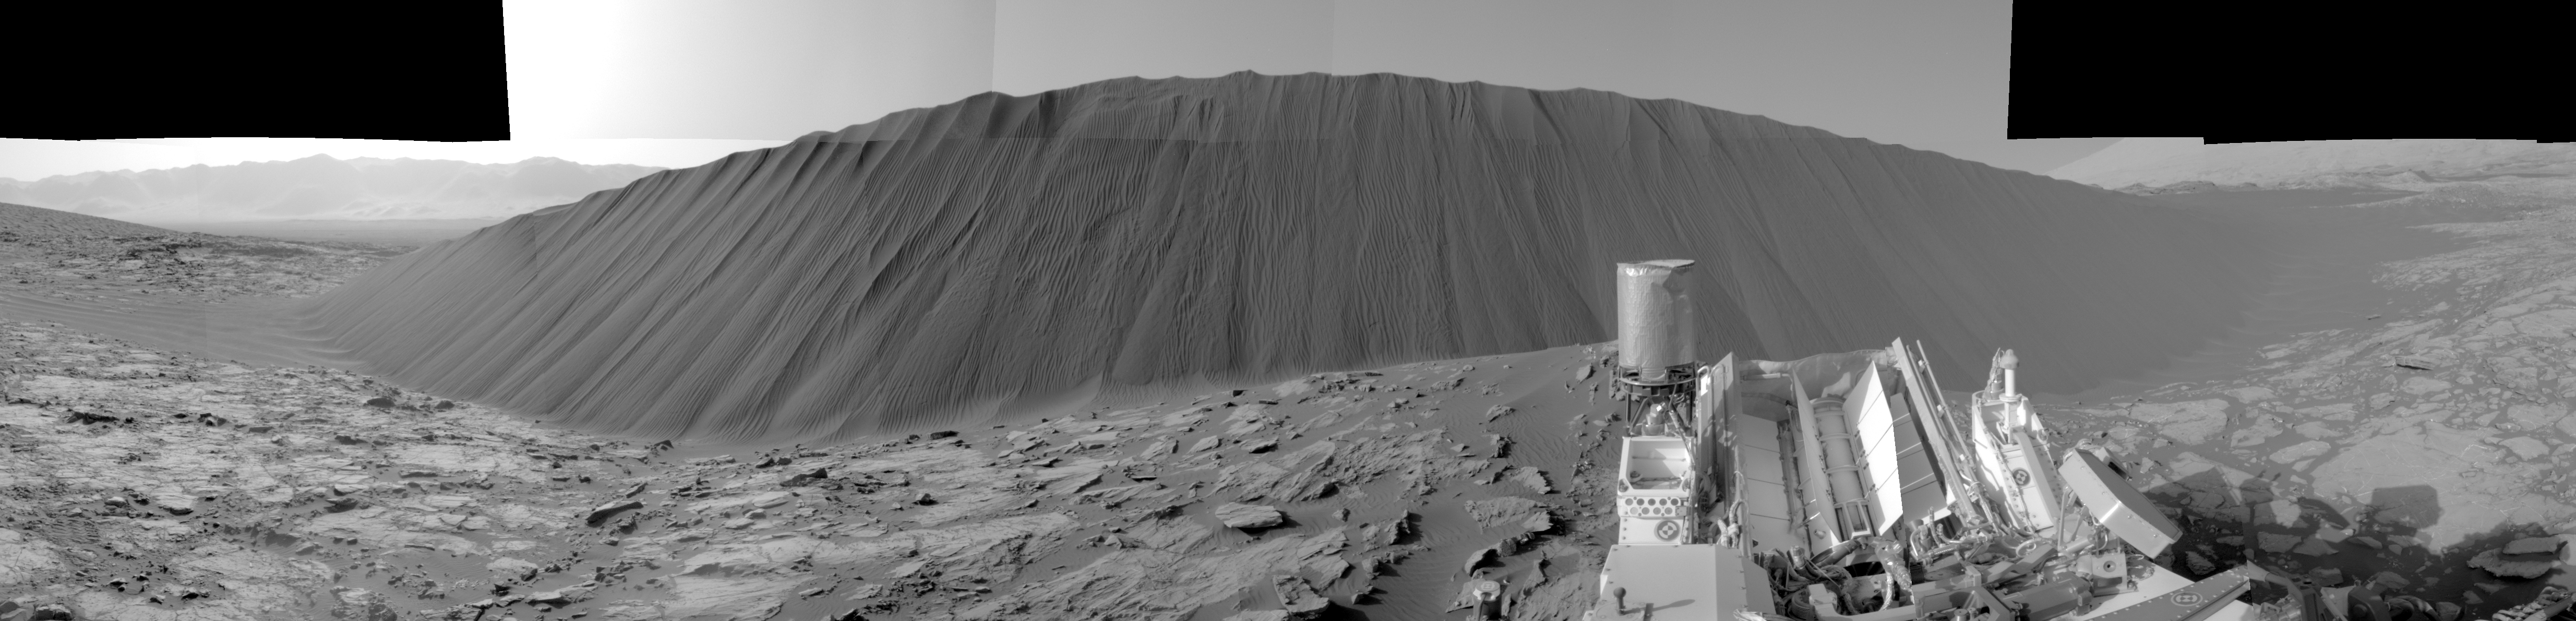 Дюна Намиб и гора Шарп на снимках, сделанных американским марсоходом «Курьозити»